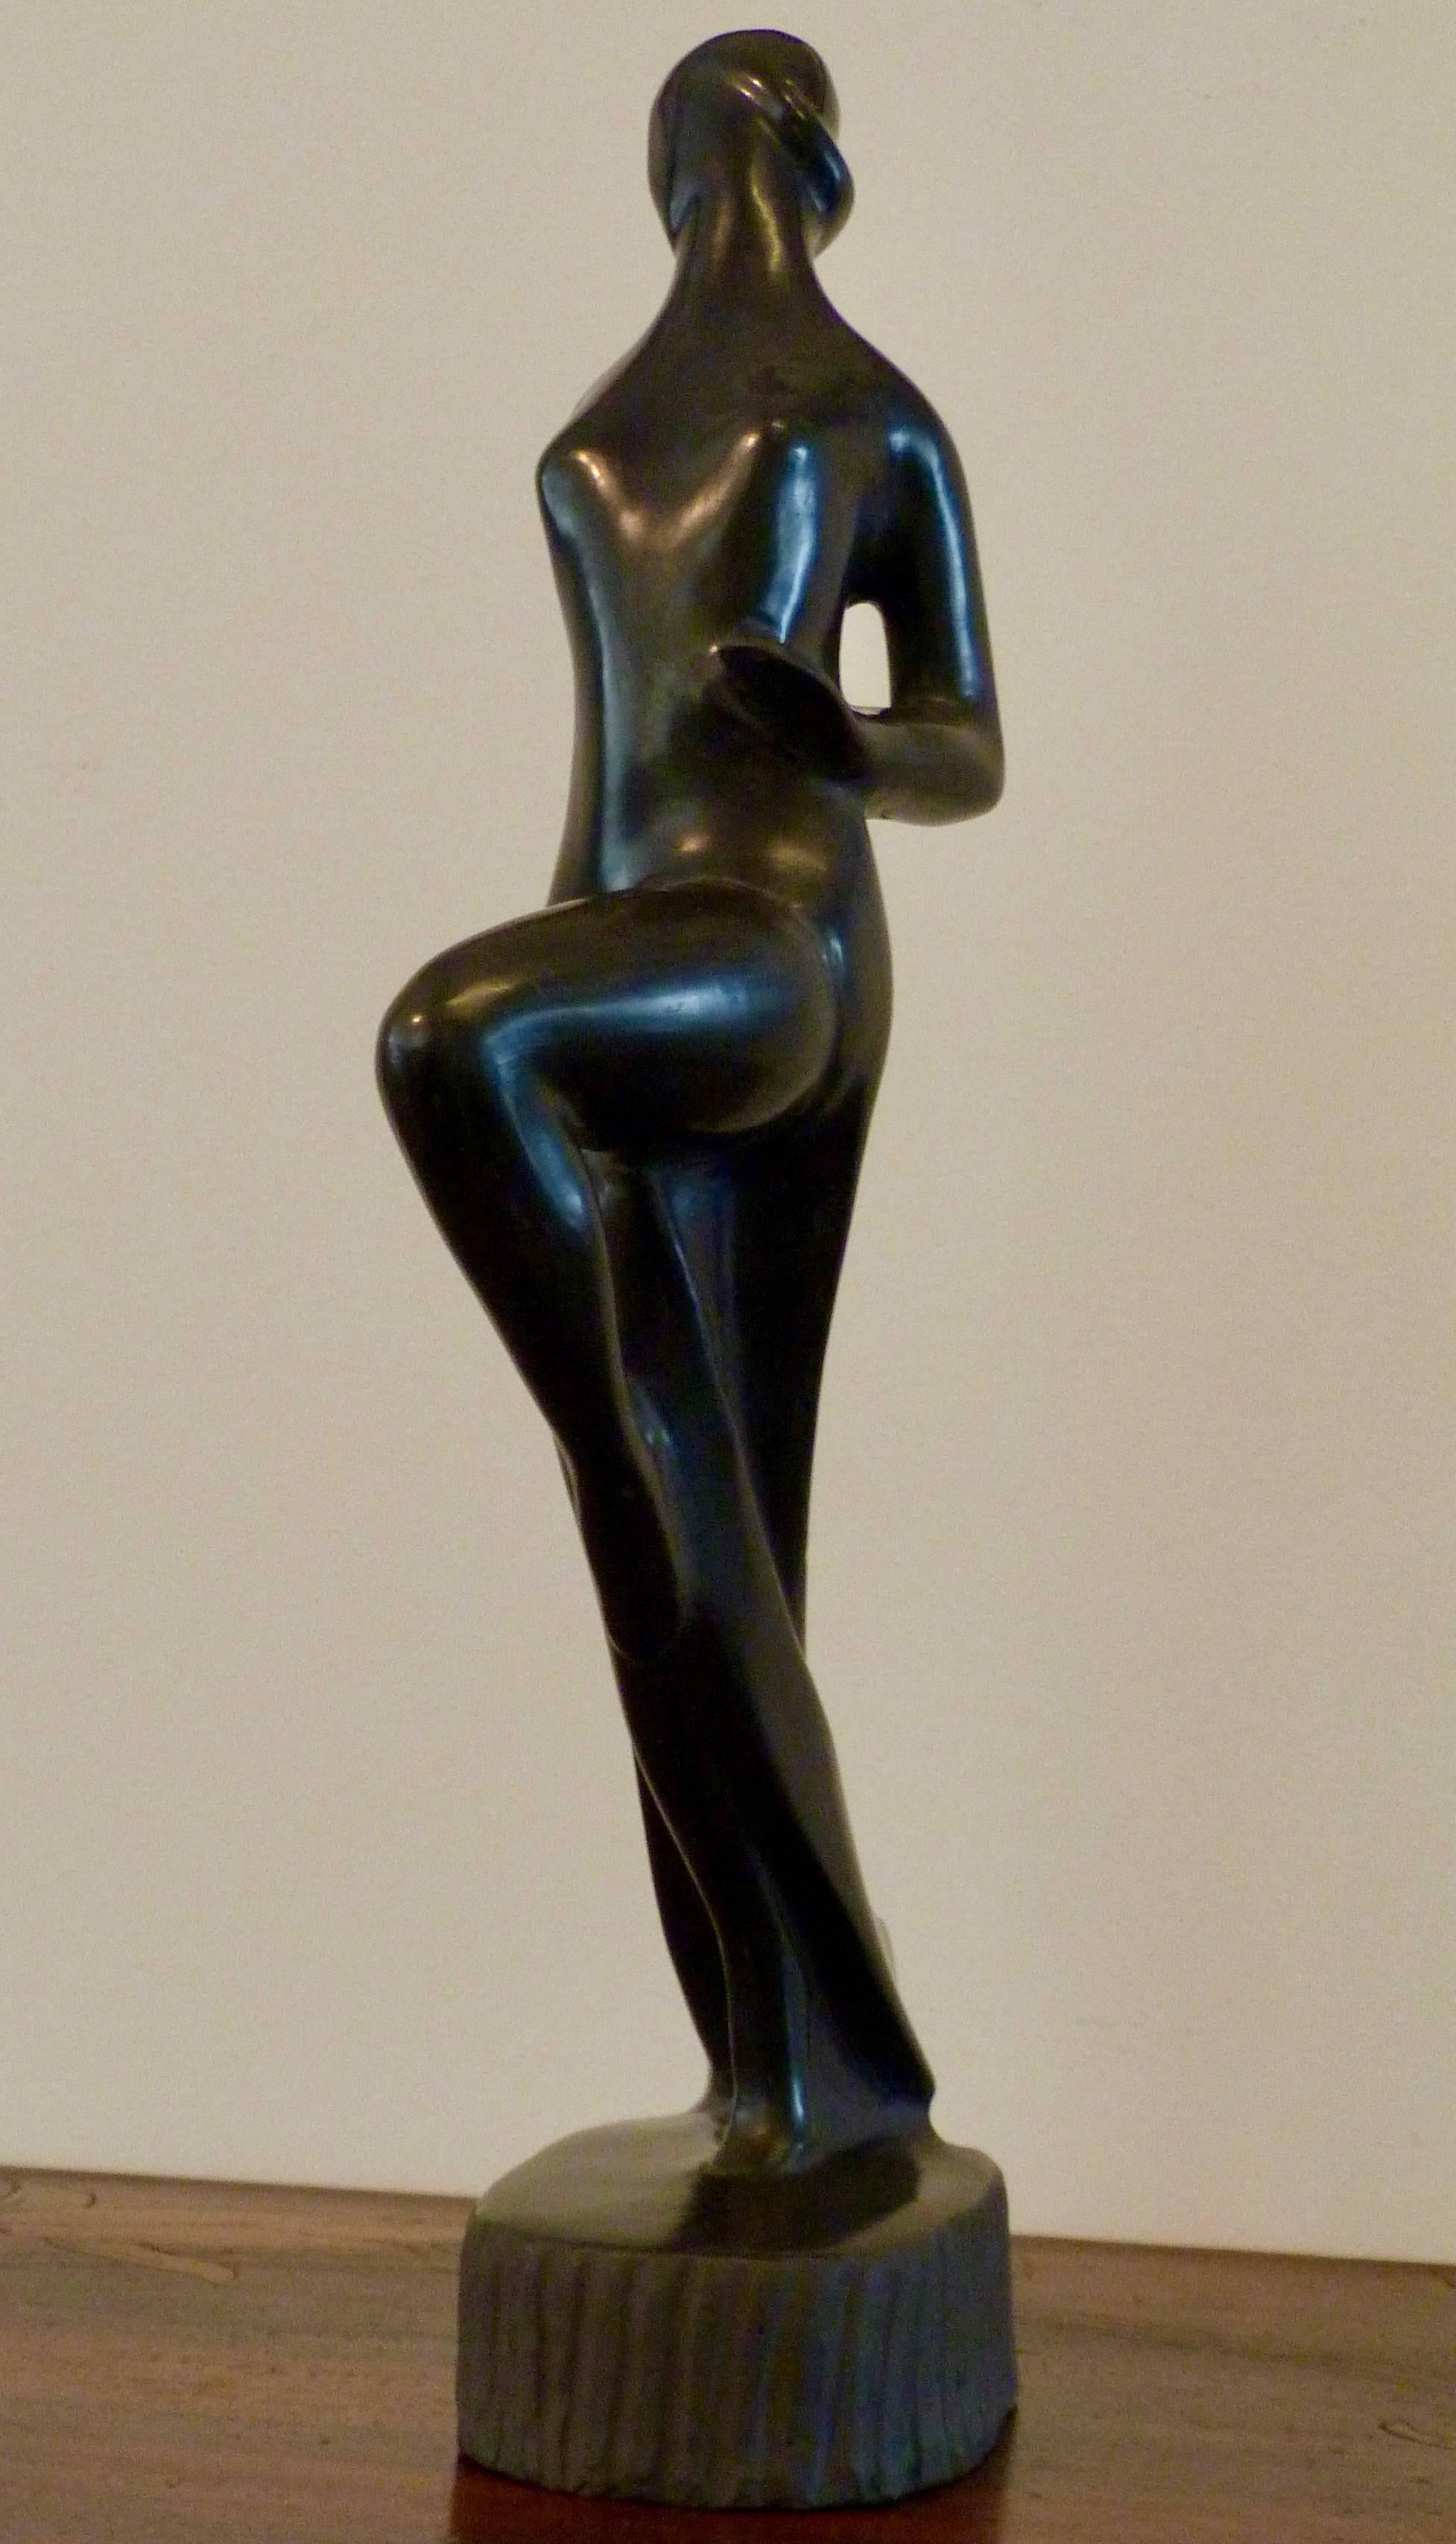 Carlo Alberto Rossi (Gubbio 1903-1970), Manifattura Rossi a Bucchero Sculpture féminine d'après un dessin de Gio Ponti, signée C.A. Rossi, vers 1940

Dans les années 1940, Gio Ponti a collaboré avec des artistes et des artisans célèbres, dont Carlo